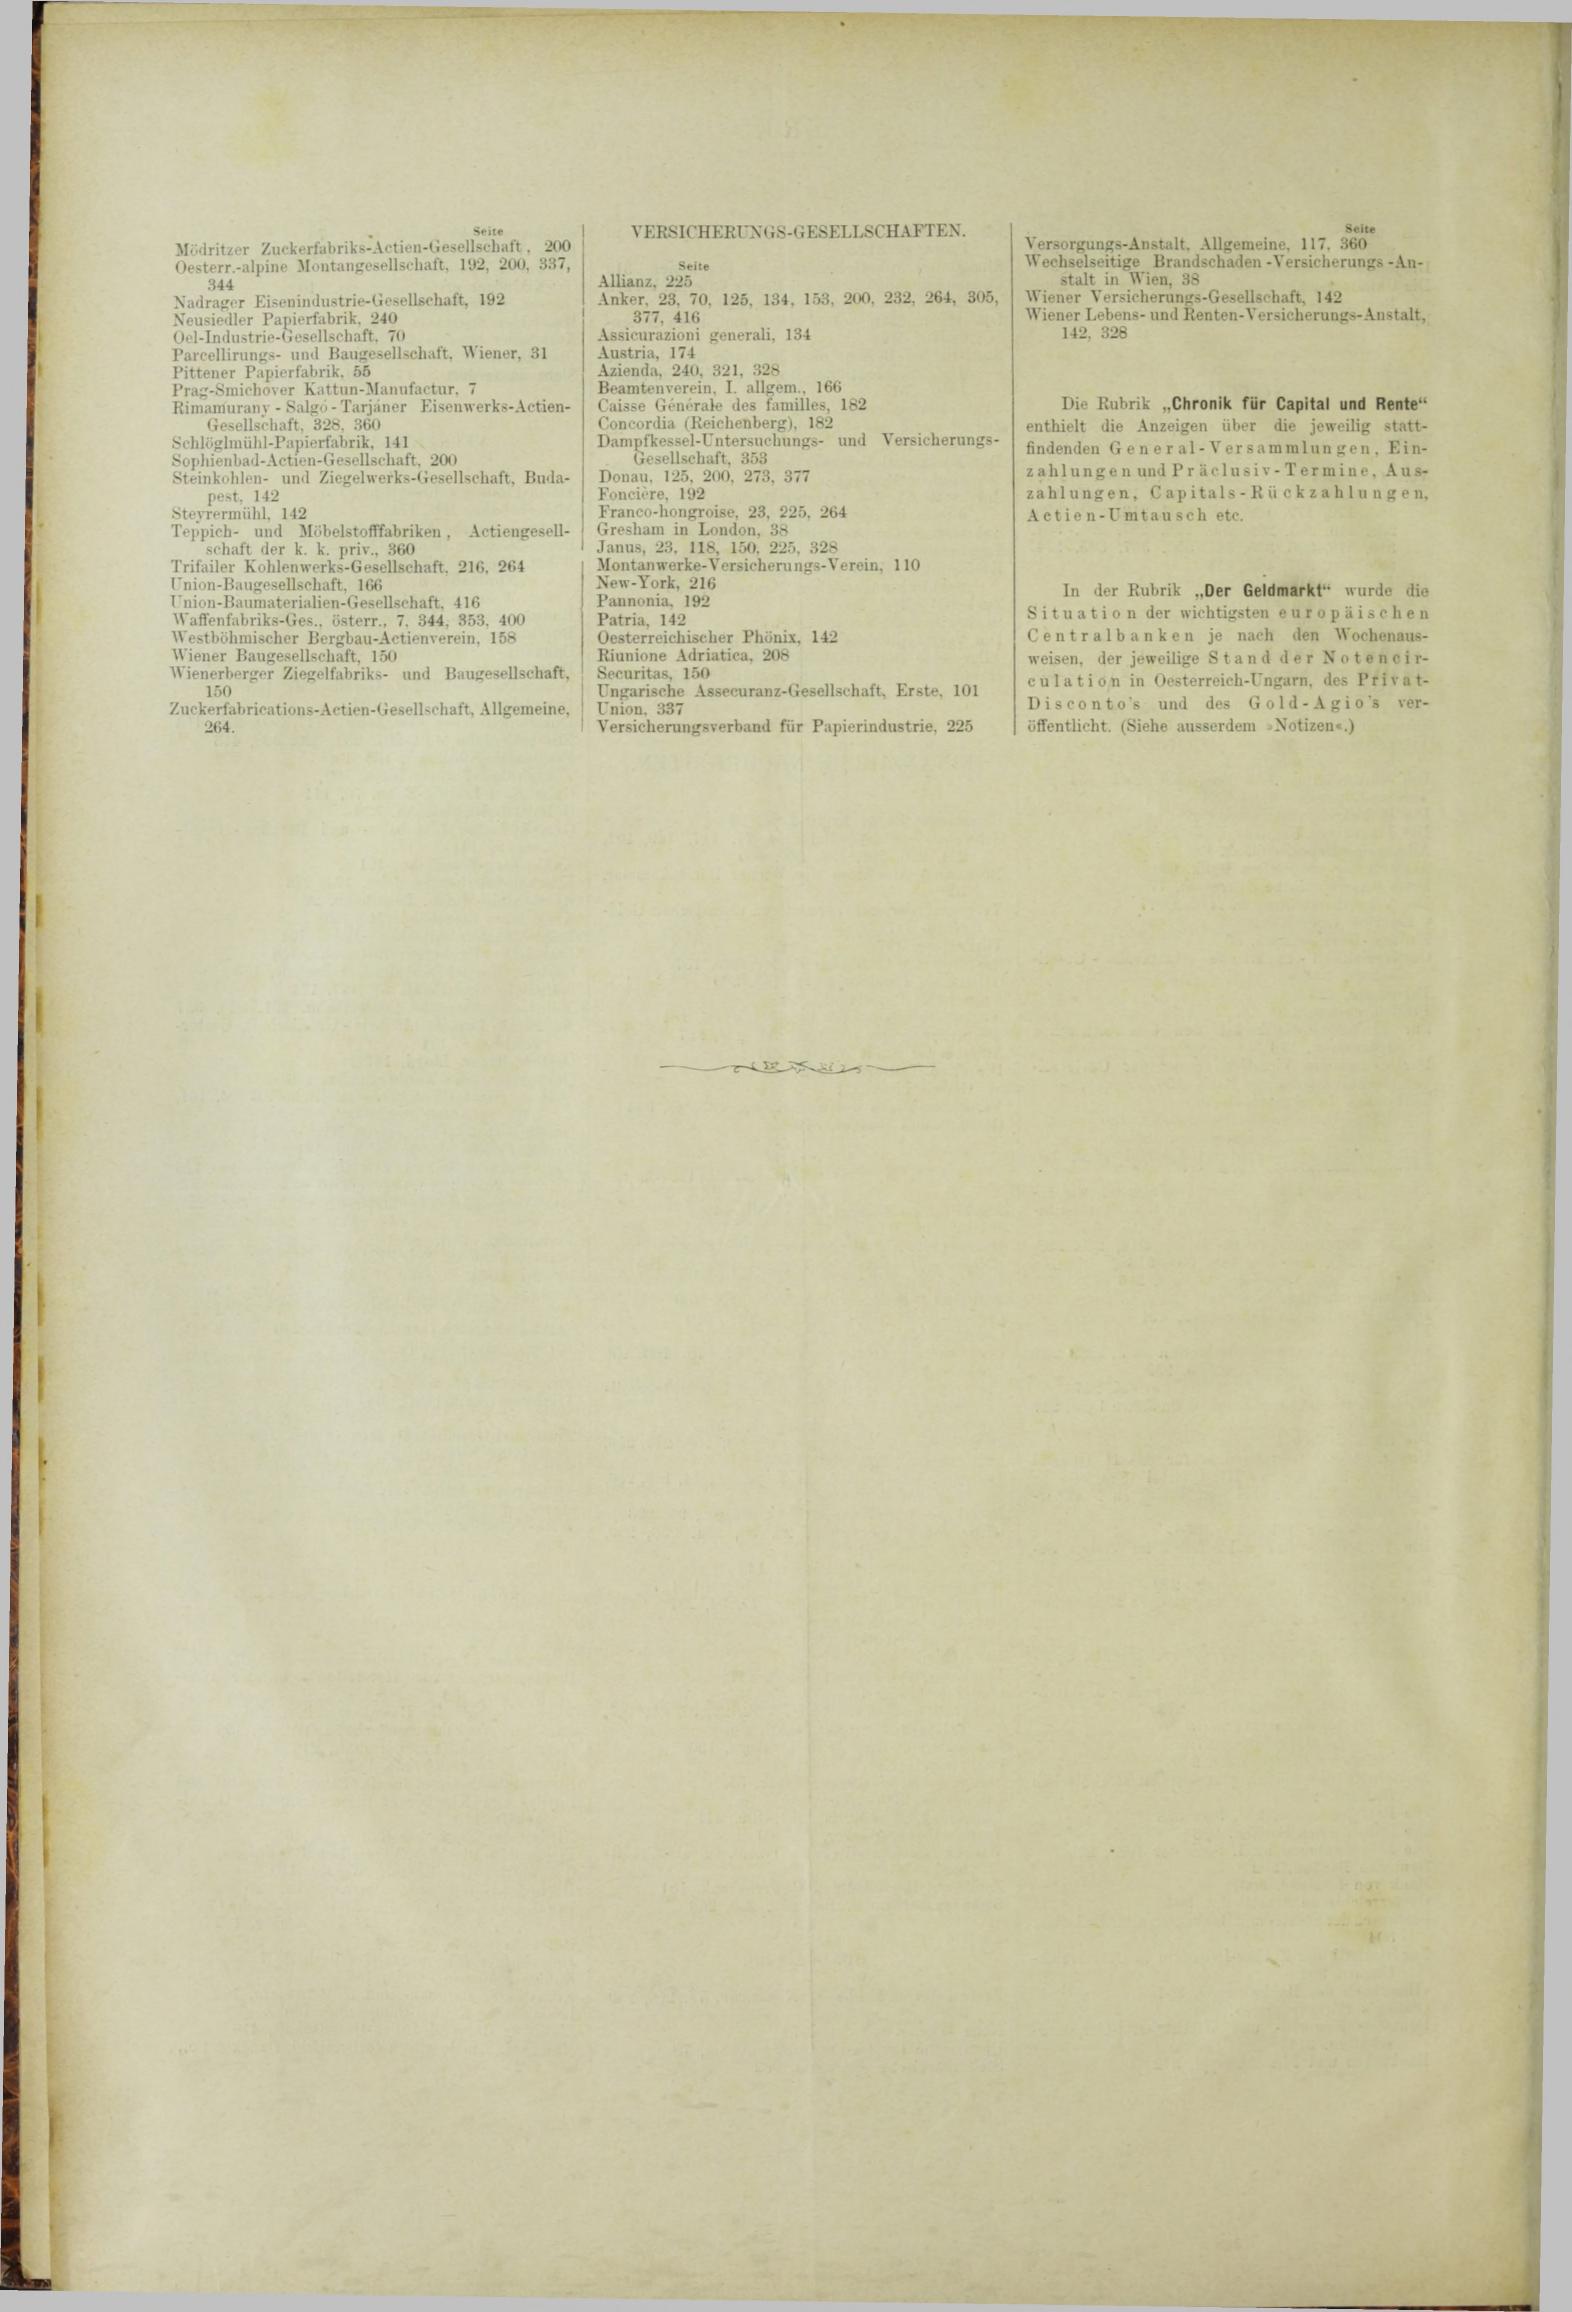 Der Tresor 17.05.1883 - Seite 12